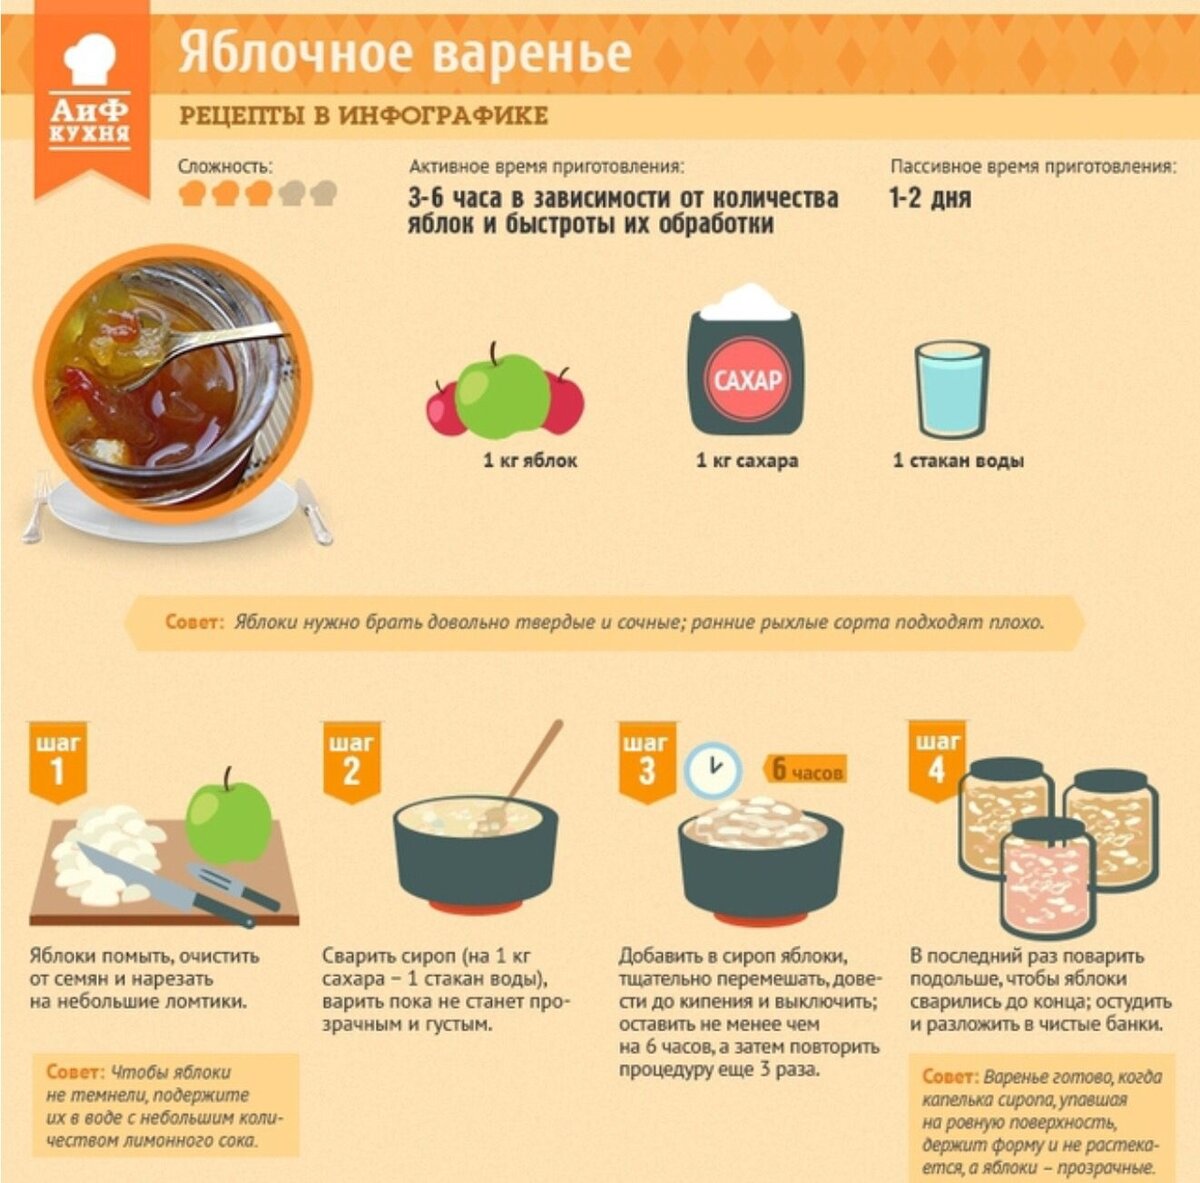 Сколько минут варится суп. Рецепты в картинках. Рецепты в инфографике. Инфографика рецепт. Простые рецепты инфографика.